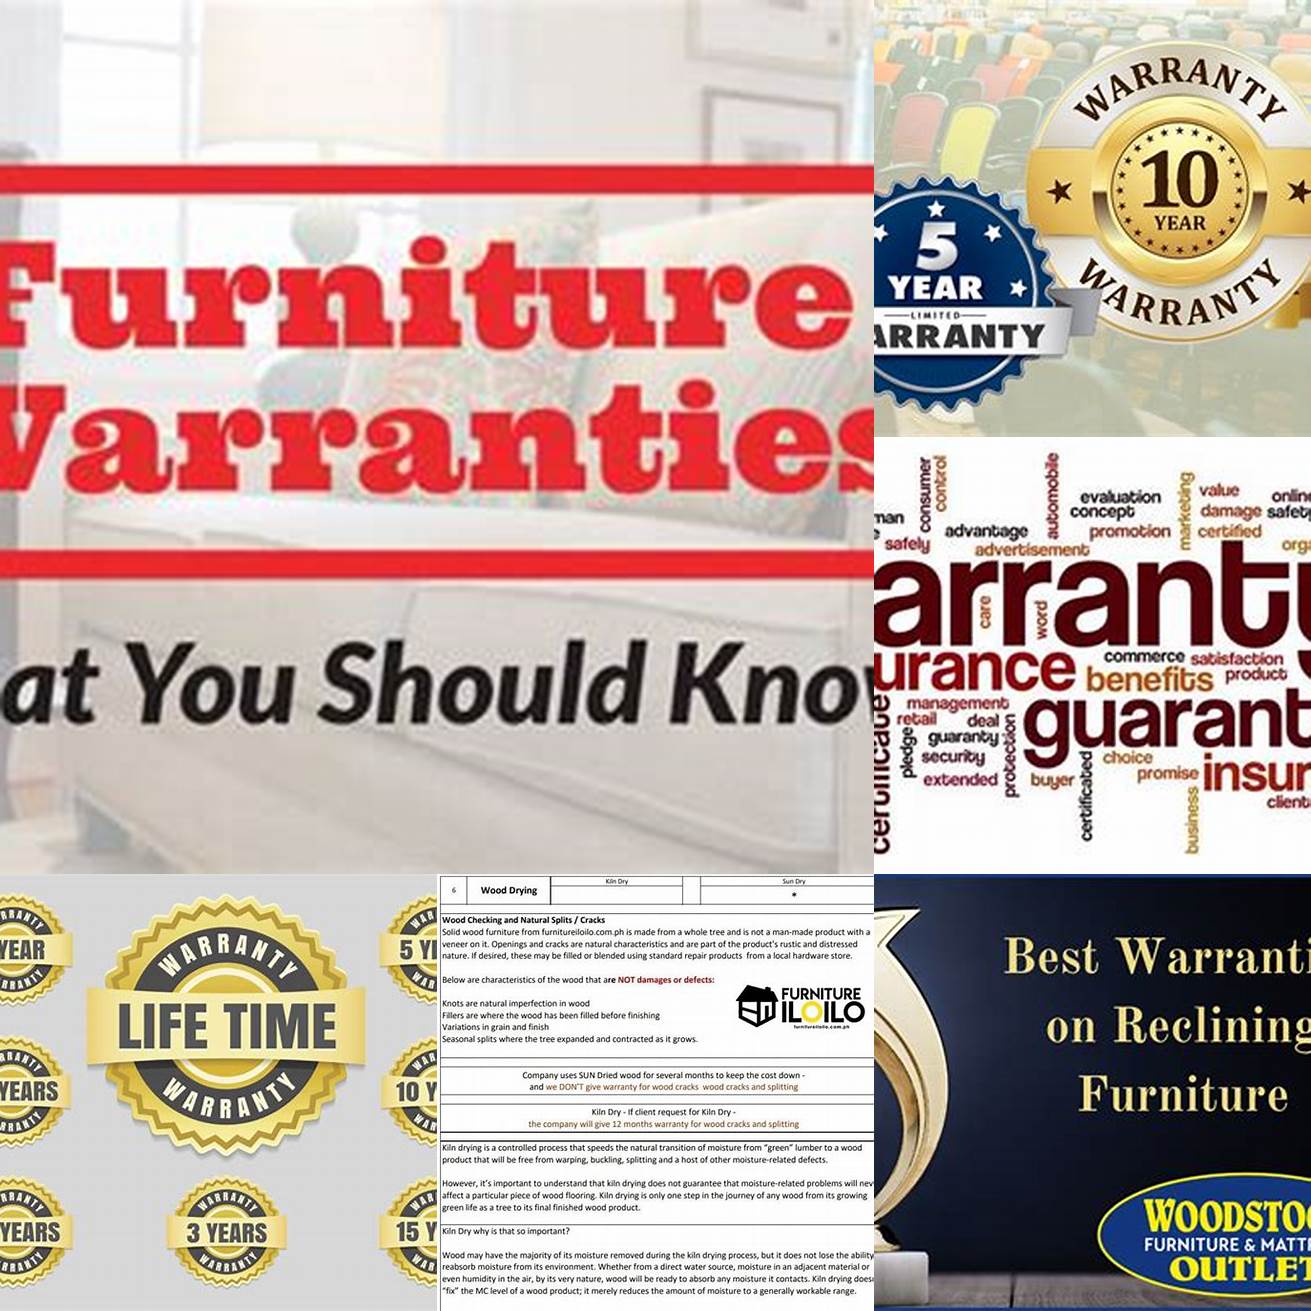 Warranties and Guarantees